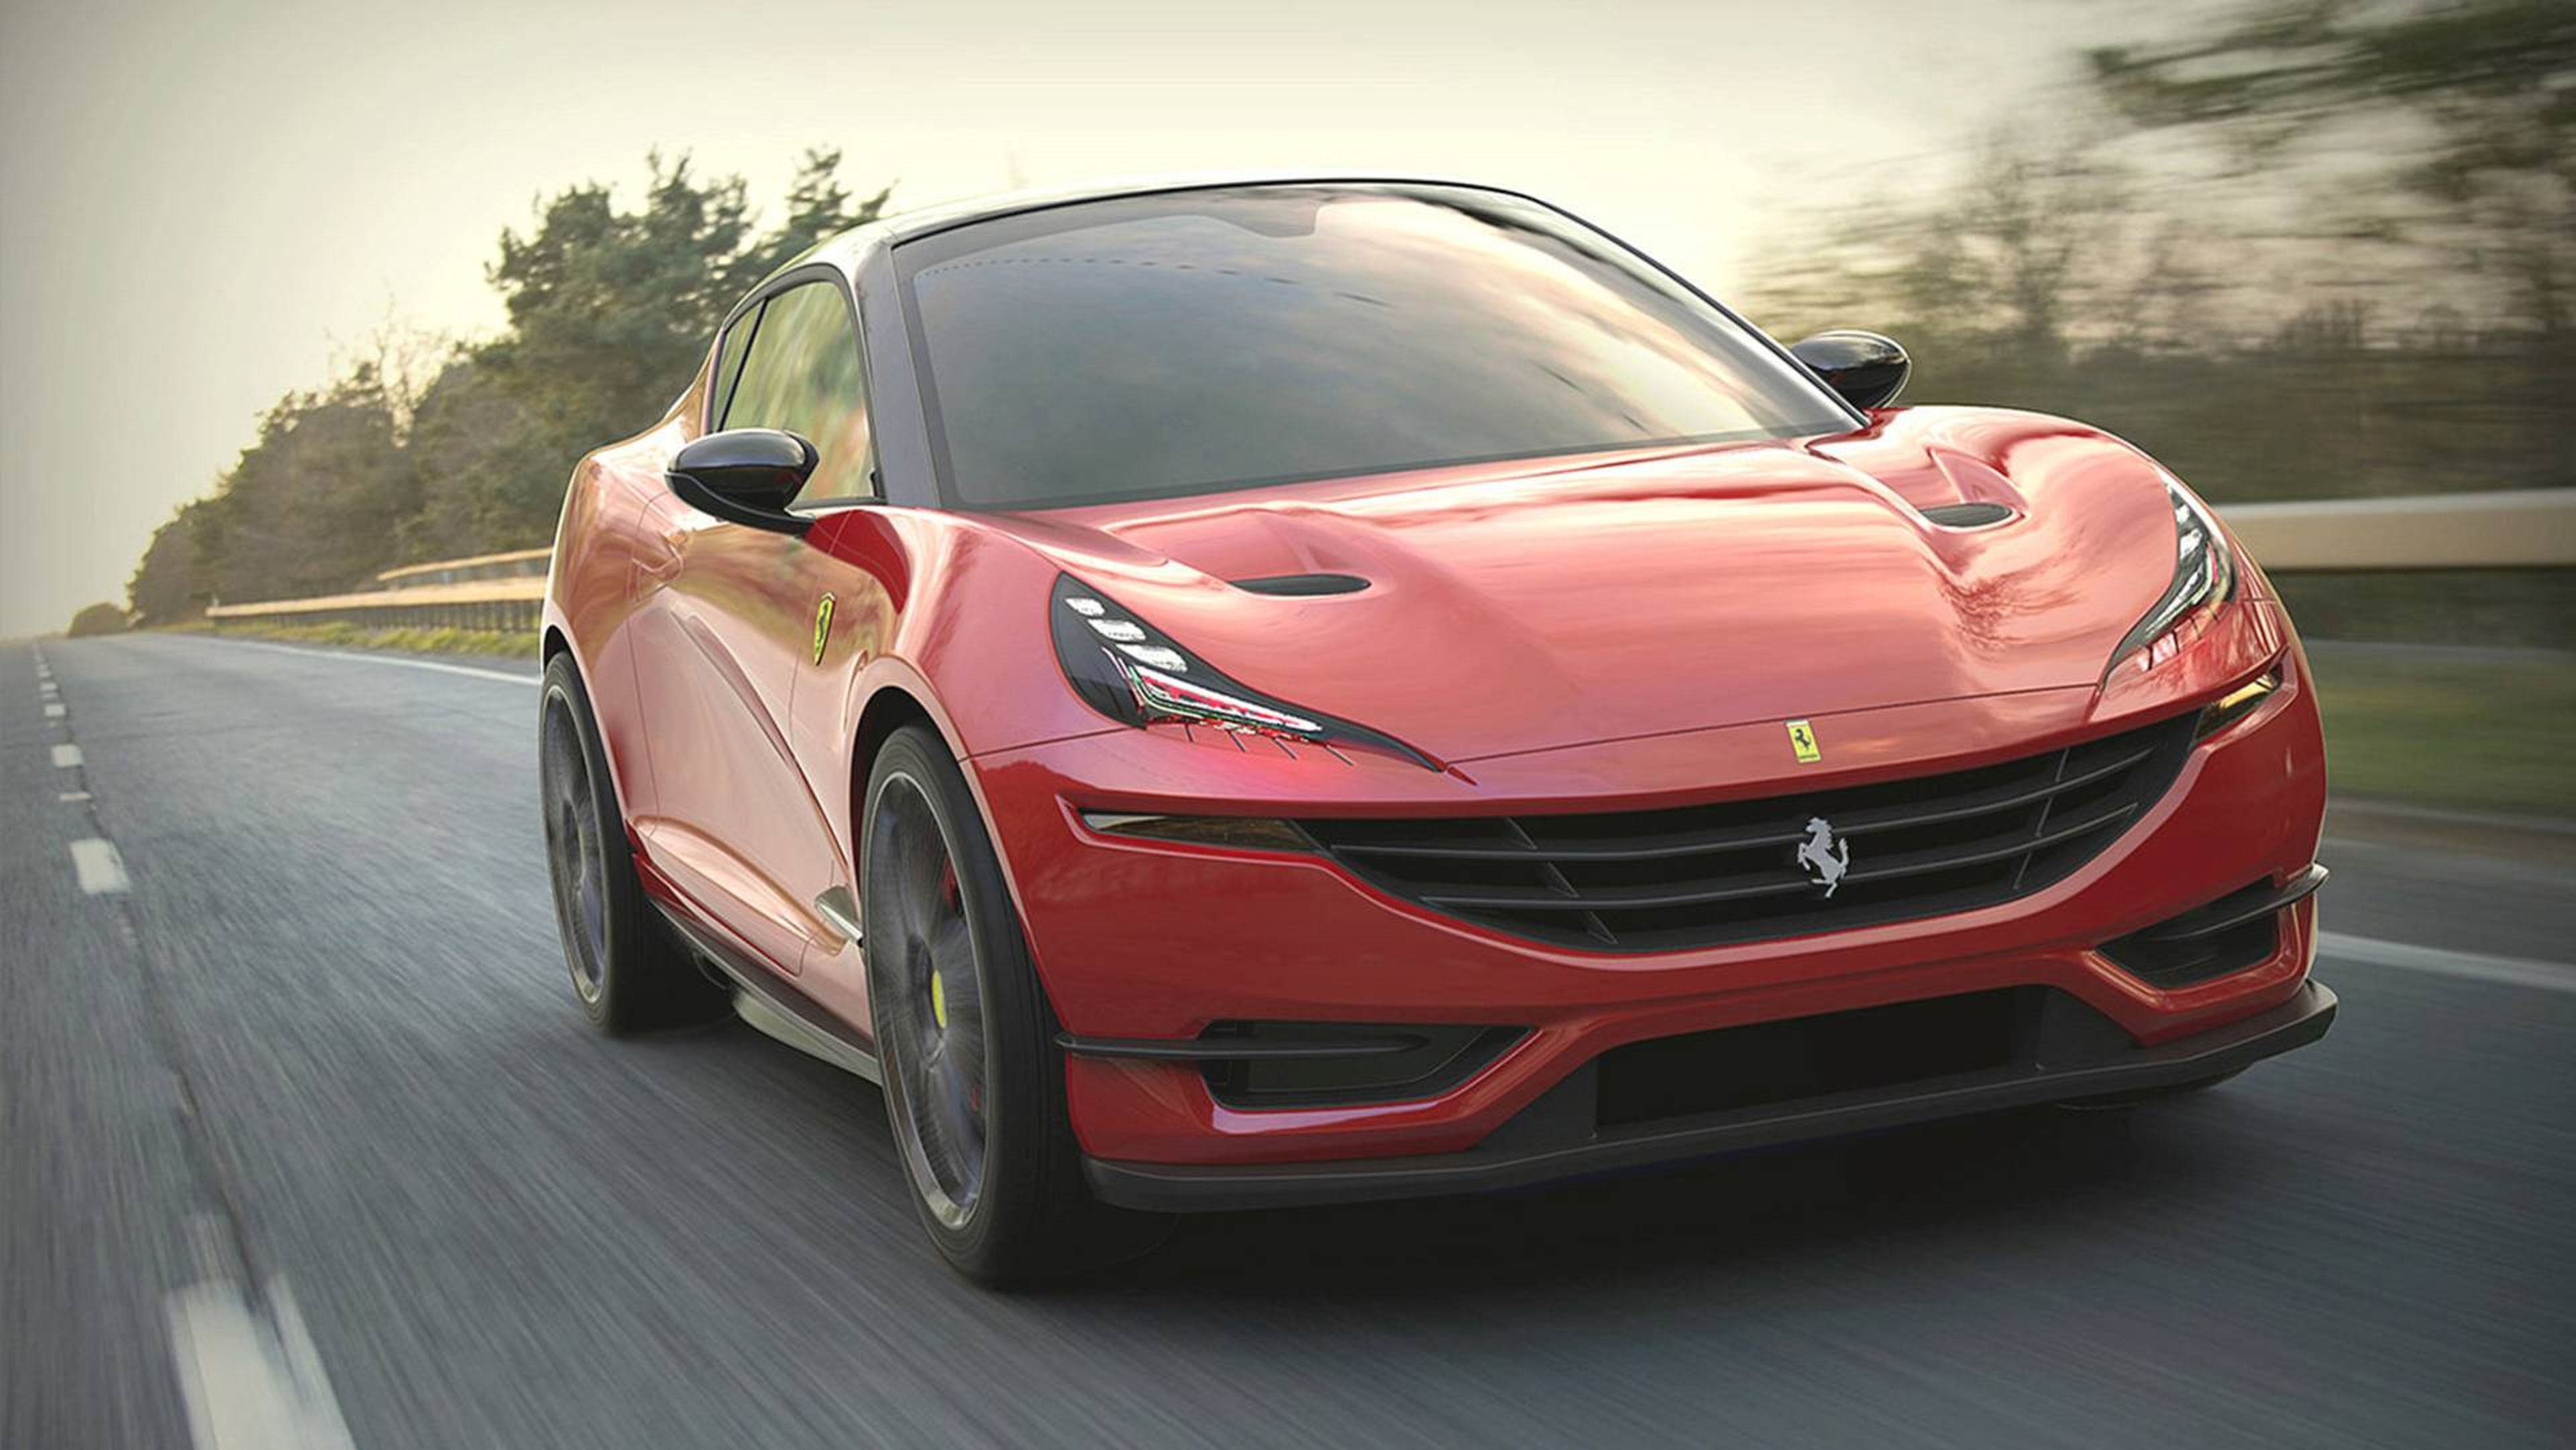 Si Ferrari produjese un compacto, ¿sería así?